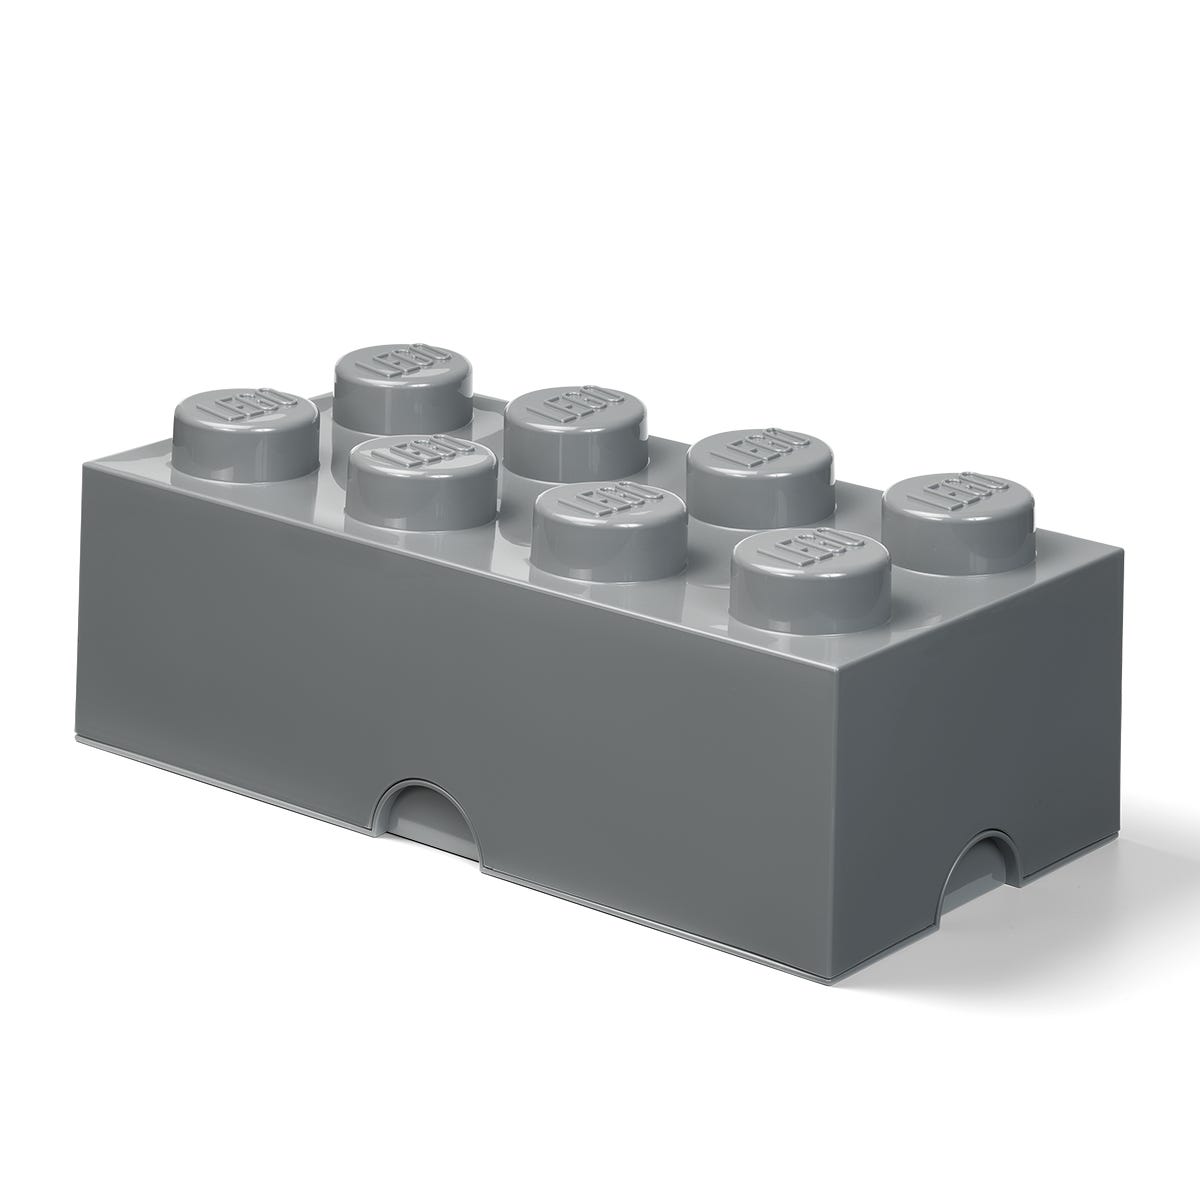 LEGO Ladrillo de almacenamiento de 8 espigas (gris)